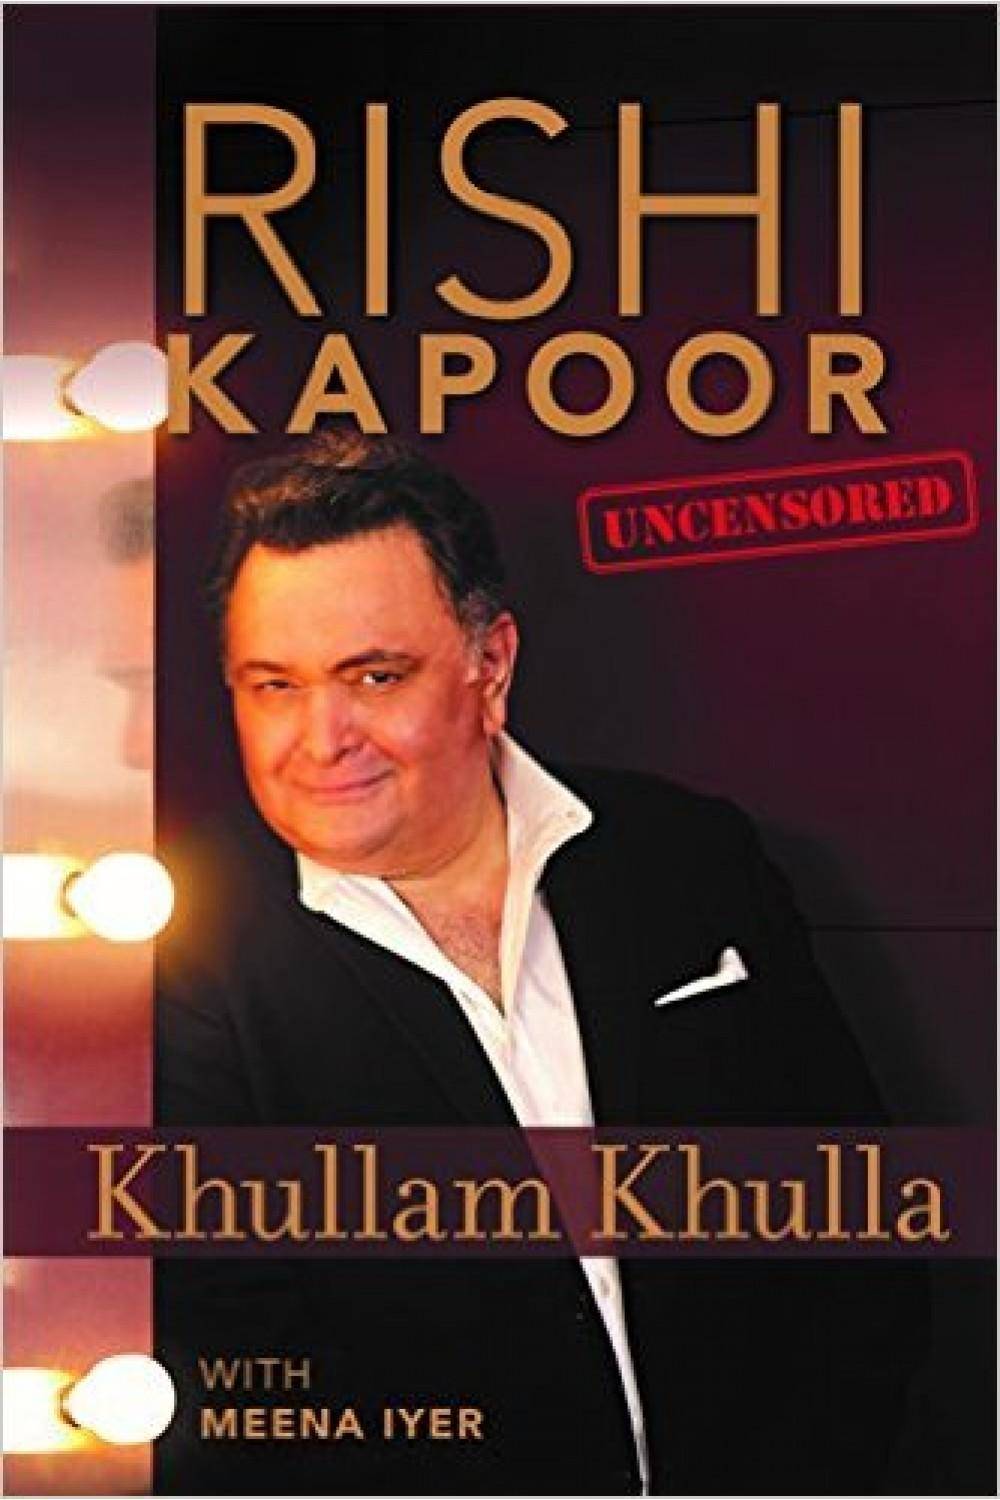 Book Review – Khullam Khulla: Rishi Kapoor Uncensored